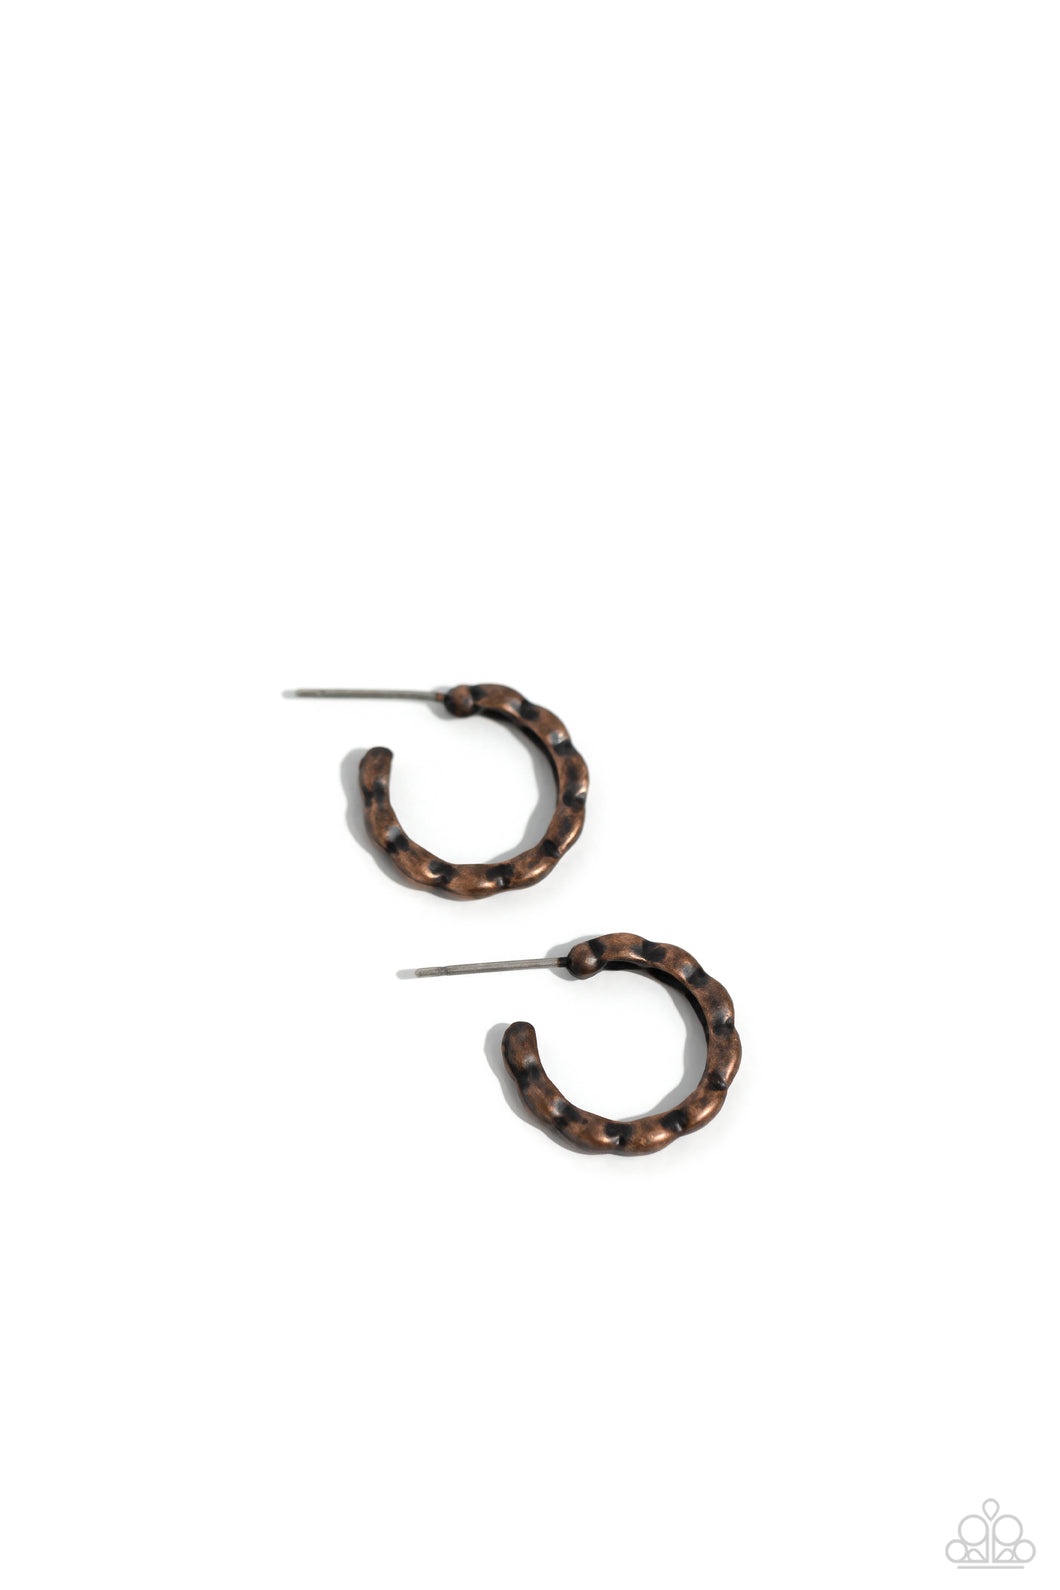 Buzzworthy Bling - Copper Earring